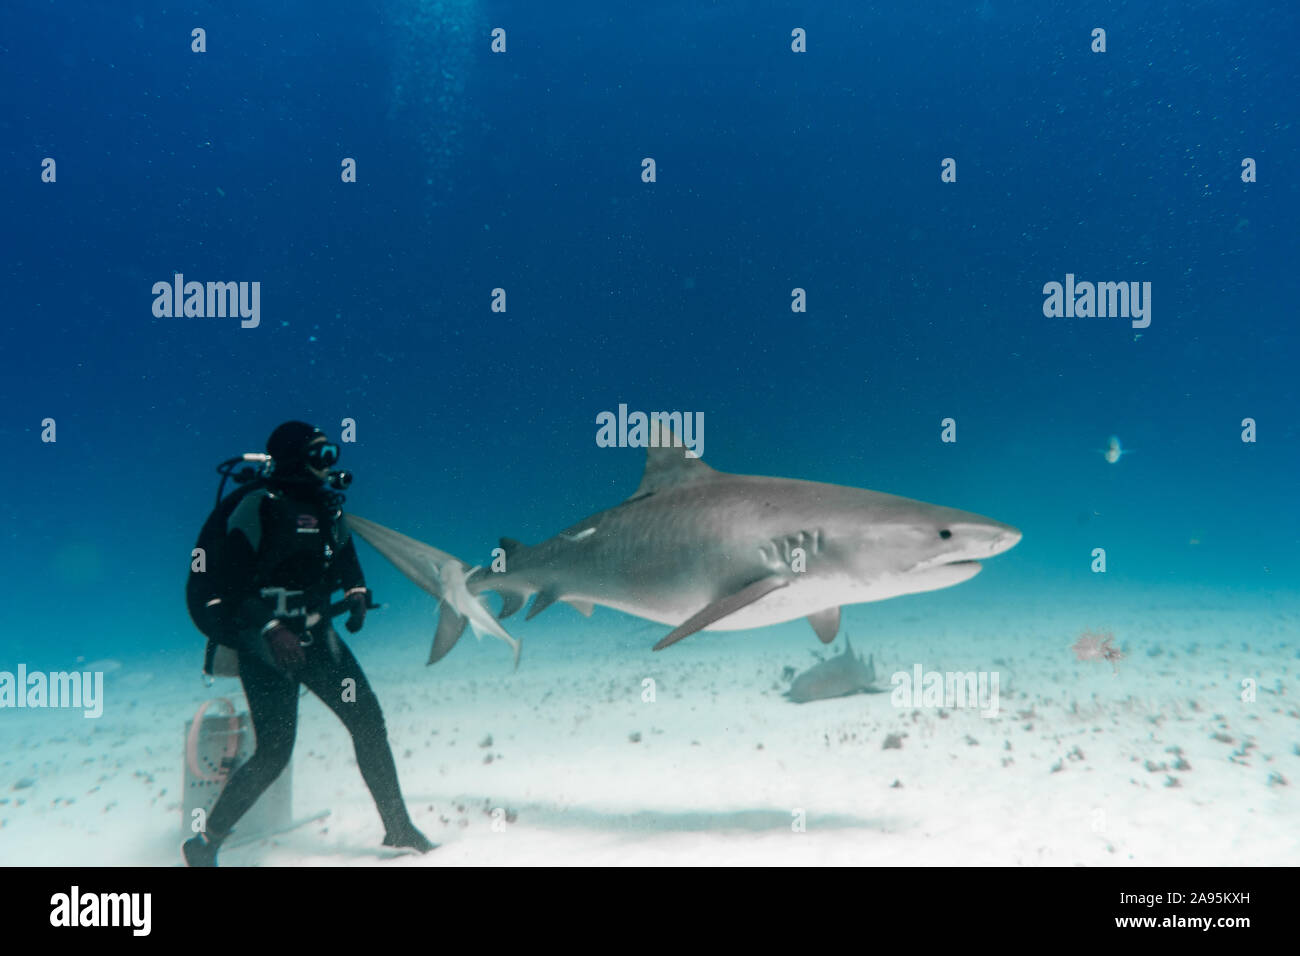 BAHAMAS: Roberta waches eine riesige Tiger Shark hautnah. Unglaubliche Fotos zeigen eine mutige Hai Schrägförderer nach oben nah und persönlich mit den Stockfoto